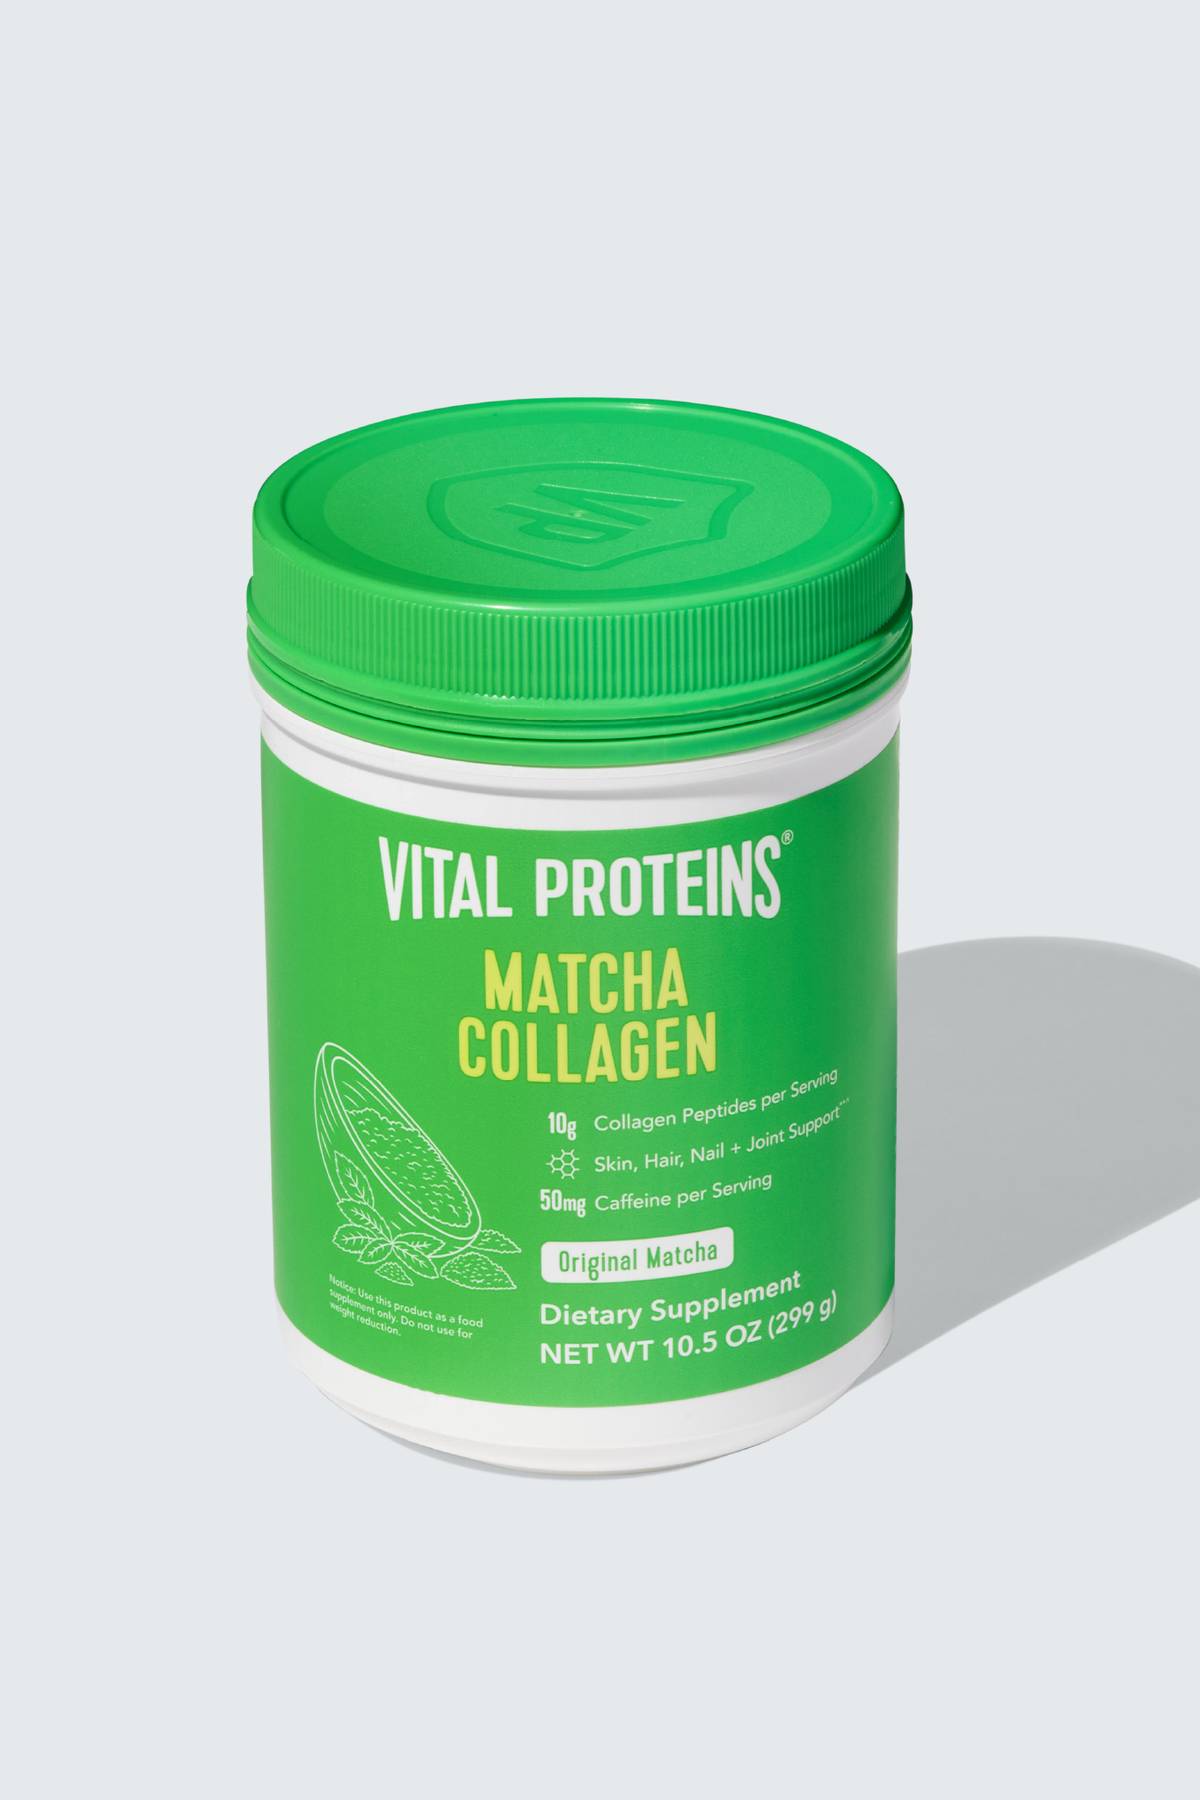 Vital Proteins Matcha Collagen Peptides Powder Supplement, L